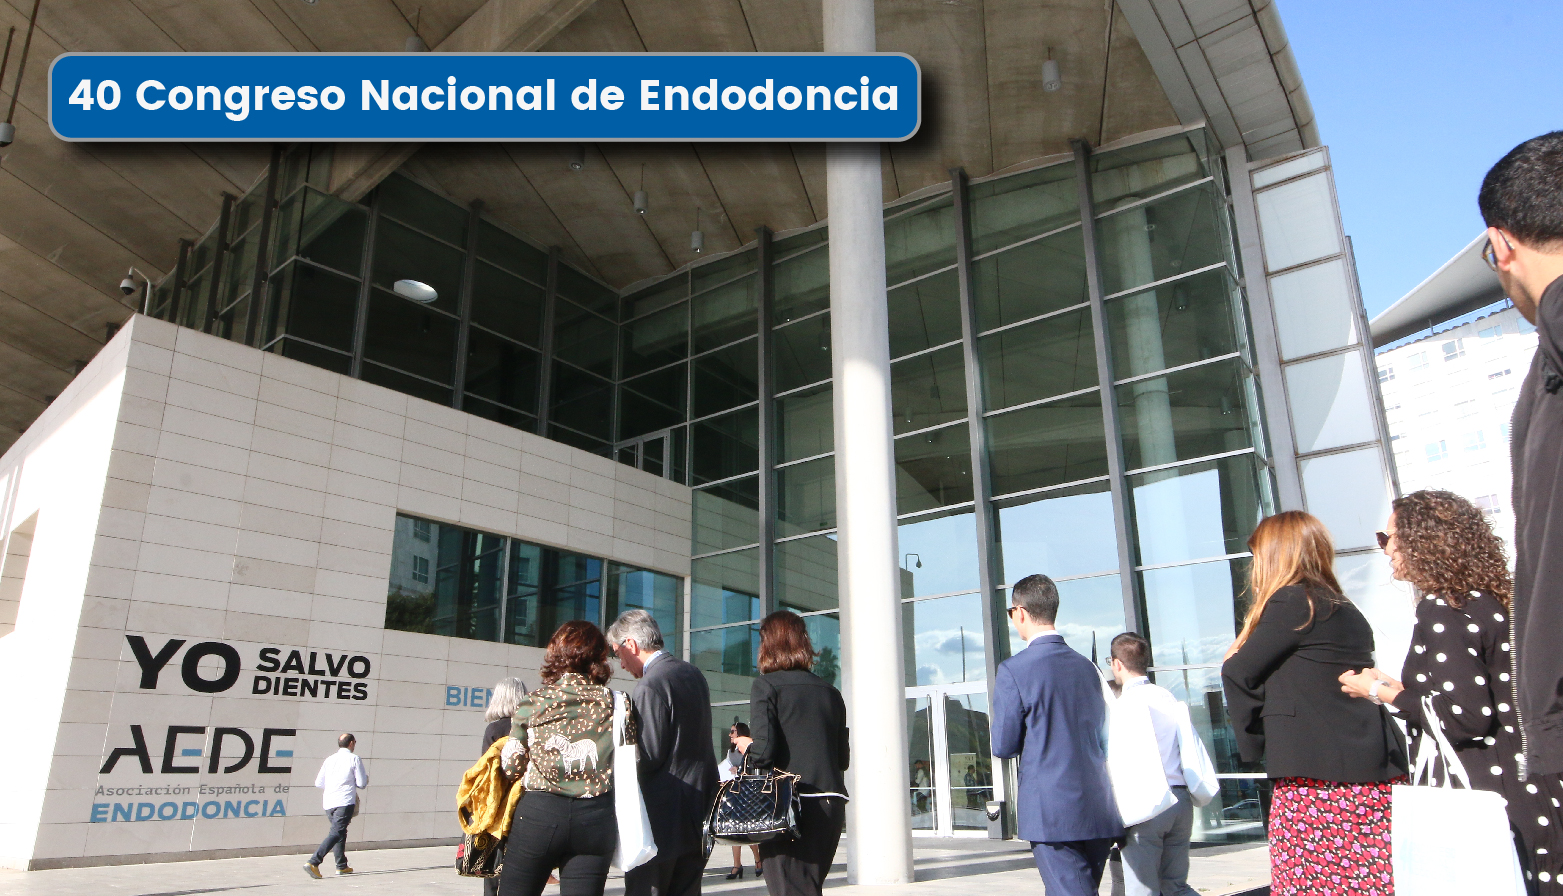 40 Congreso Nacional de Endodoncia